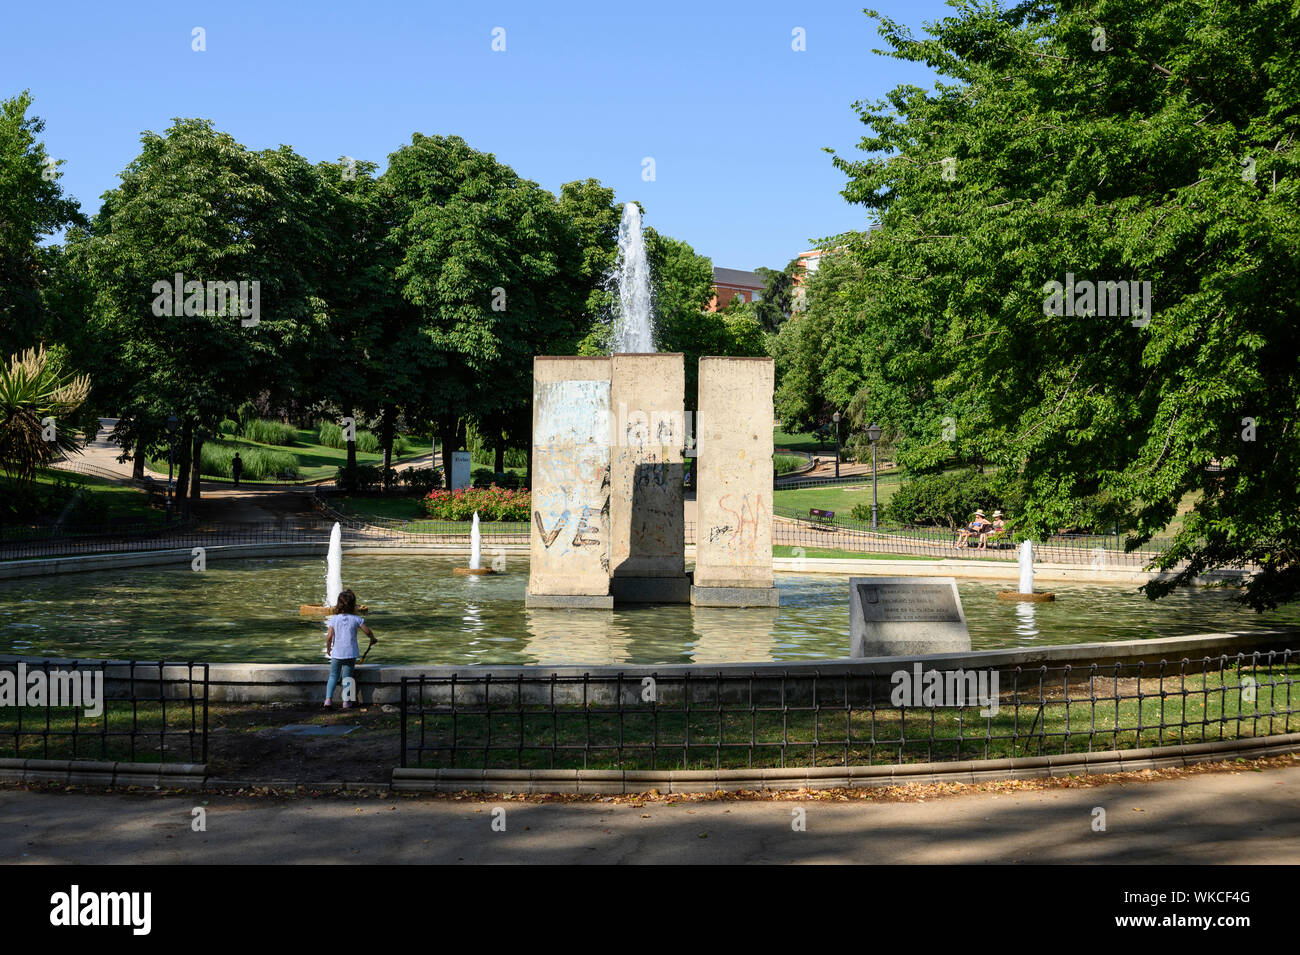 Madrid. L'Espagne. Parque de Berlín, vestiges du Mur de Berlin constituent le joyau de la fontaine dédiée à la démolition du mur de Berlin. Banque D'Images